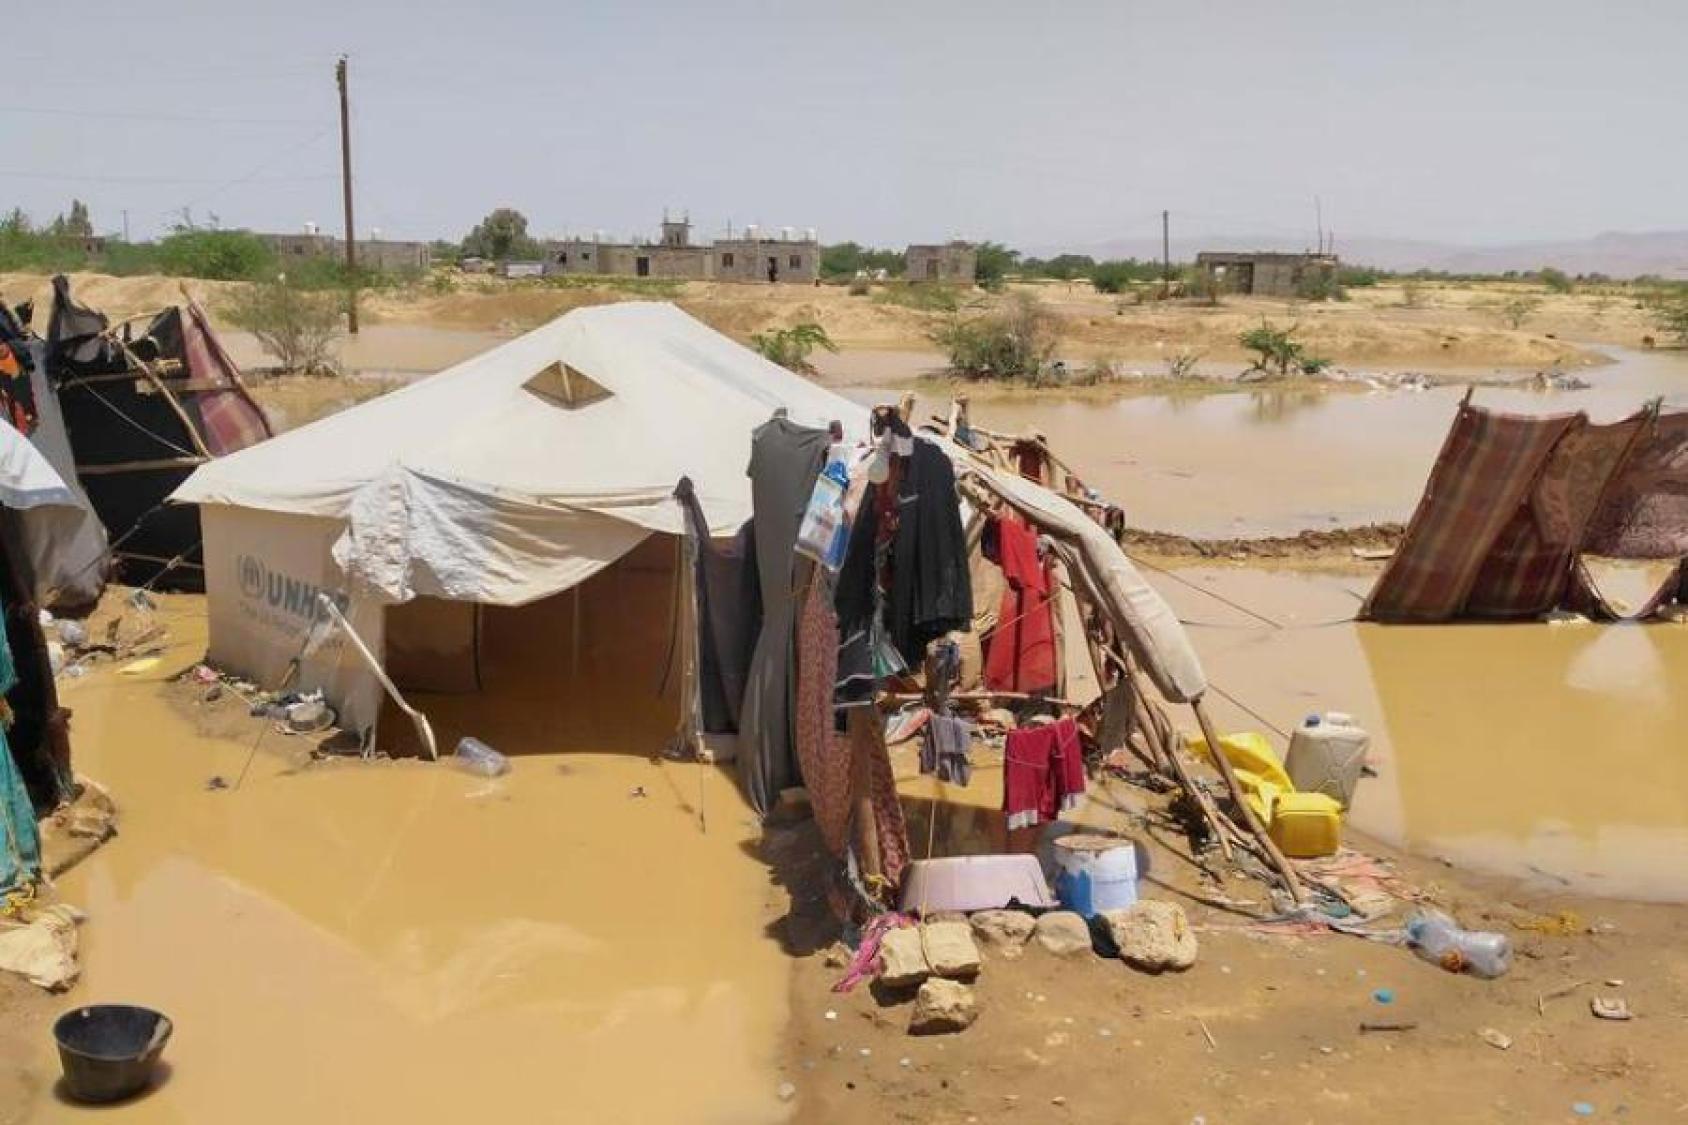 Tiendas de campaña instaladas en un campamento para las personas que perdieron sus hogares a causa de las inundaciones en Al Jawf, Yemen.